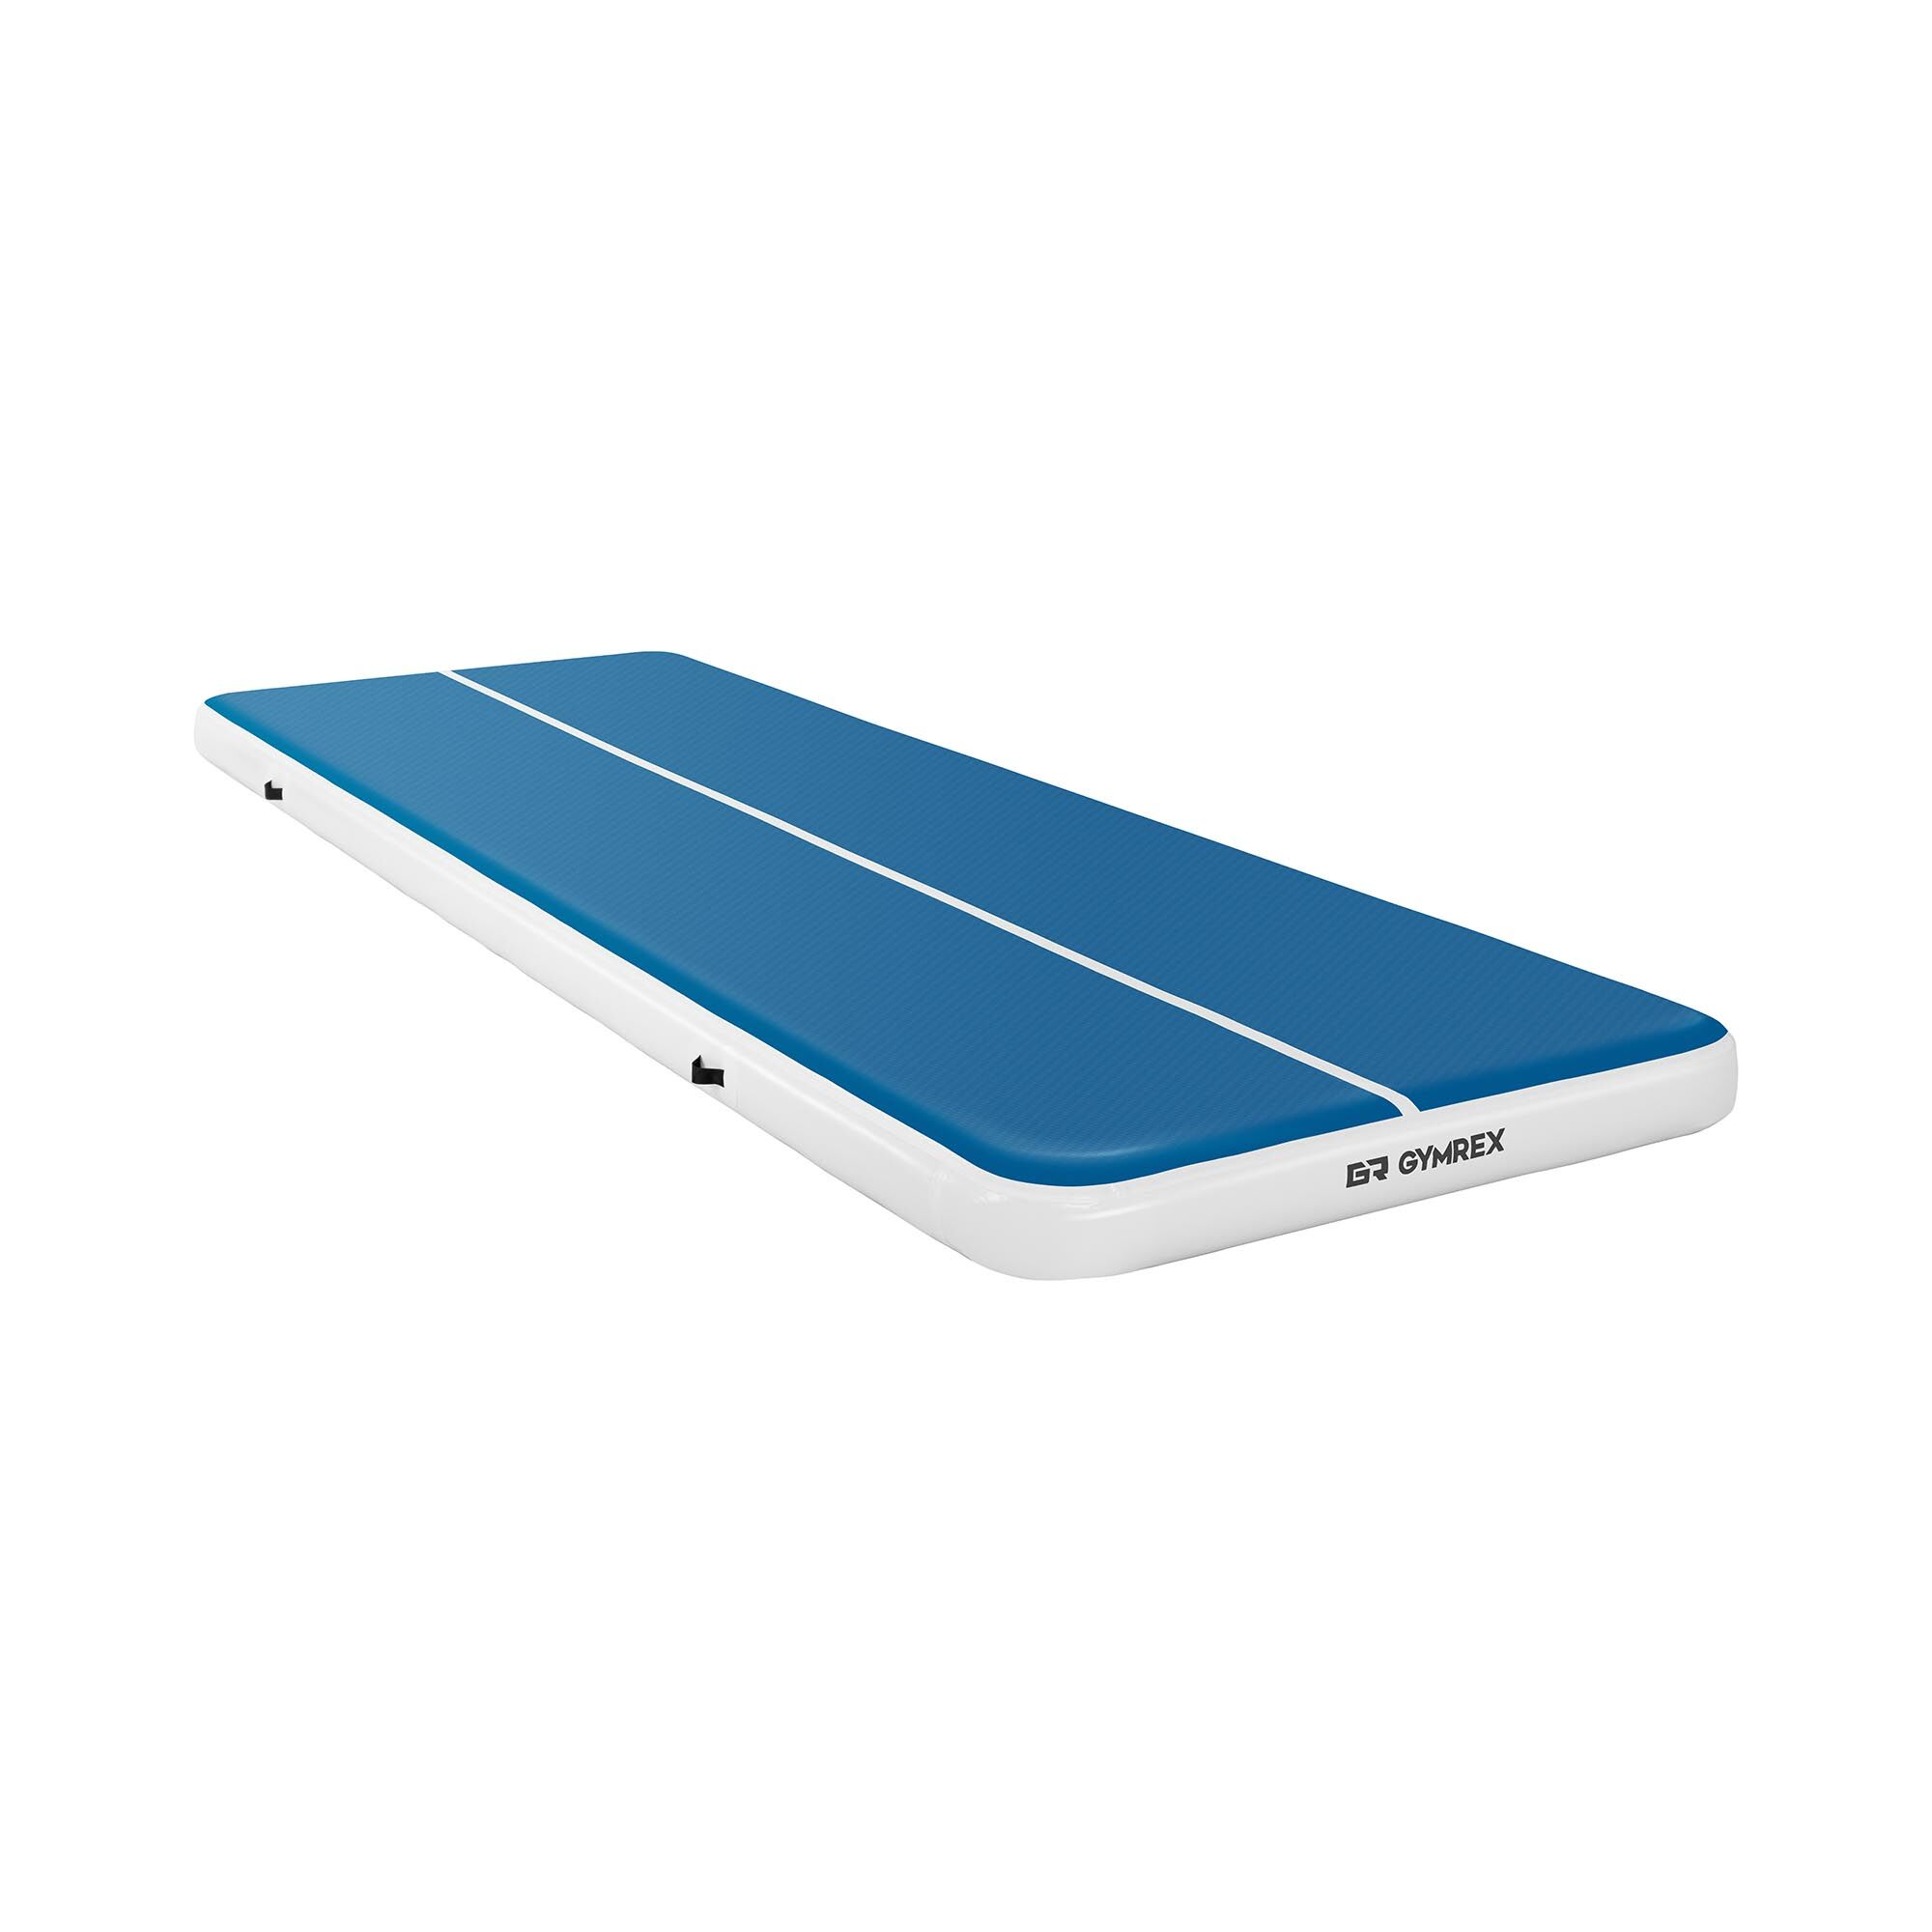 Gymrex Aufblasbare Turnmatte - Airtrack - 600 x 200 x 20 cm - 400 kg - blau/weiß 10230115